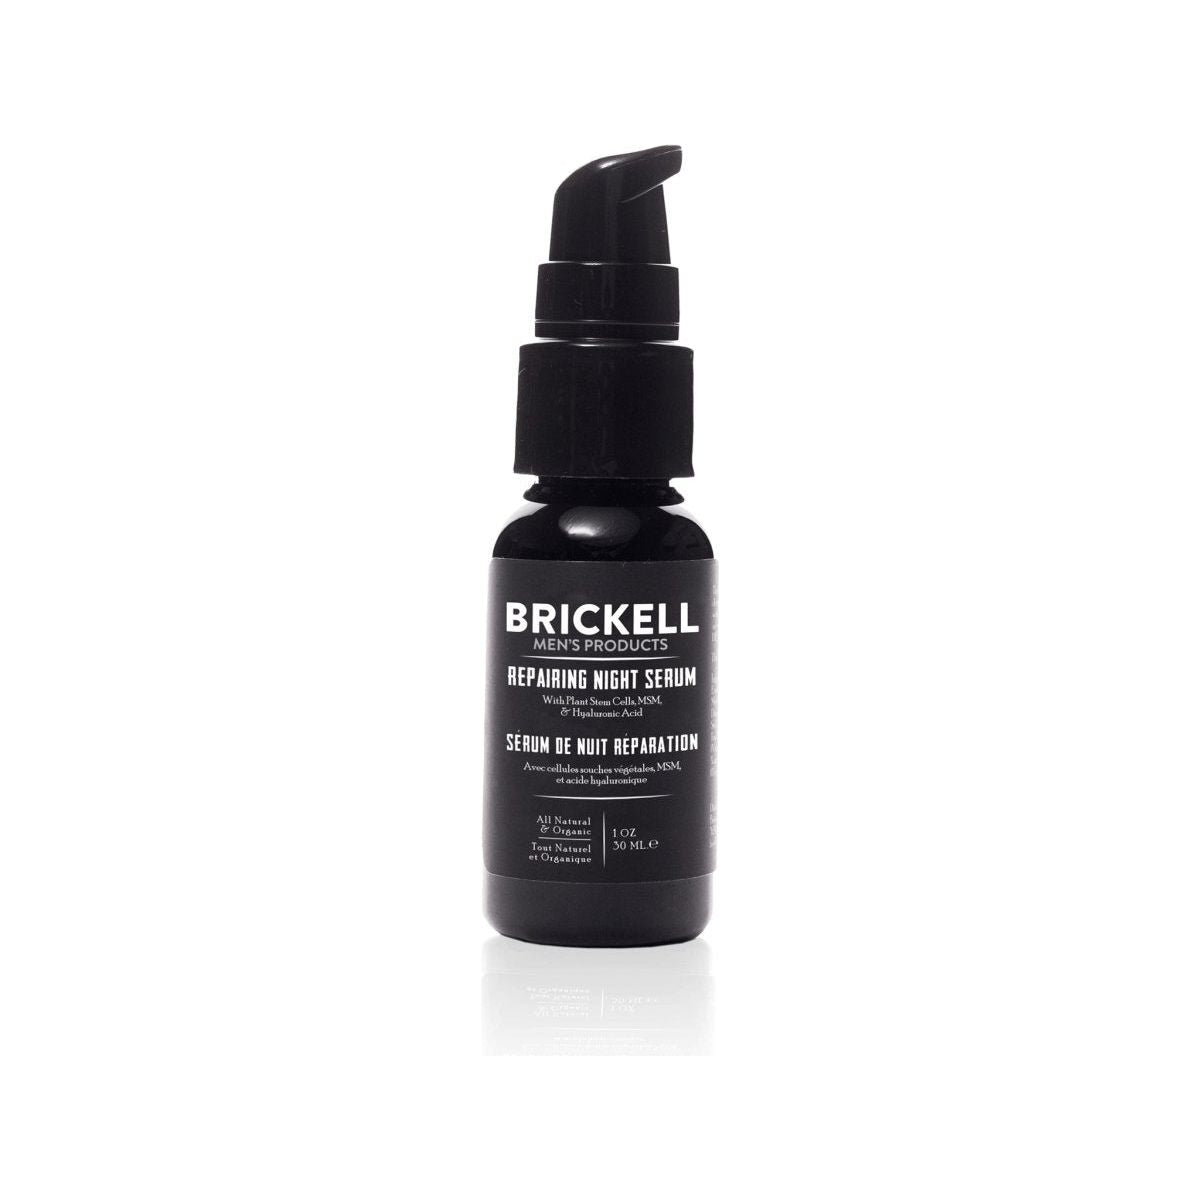 Brickell Repairing Night Serum - 29ml - Glam Global UK